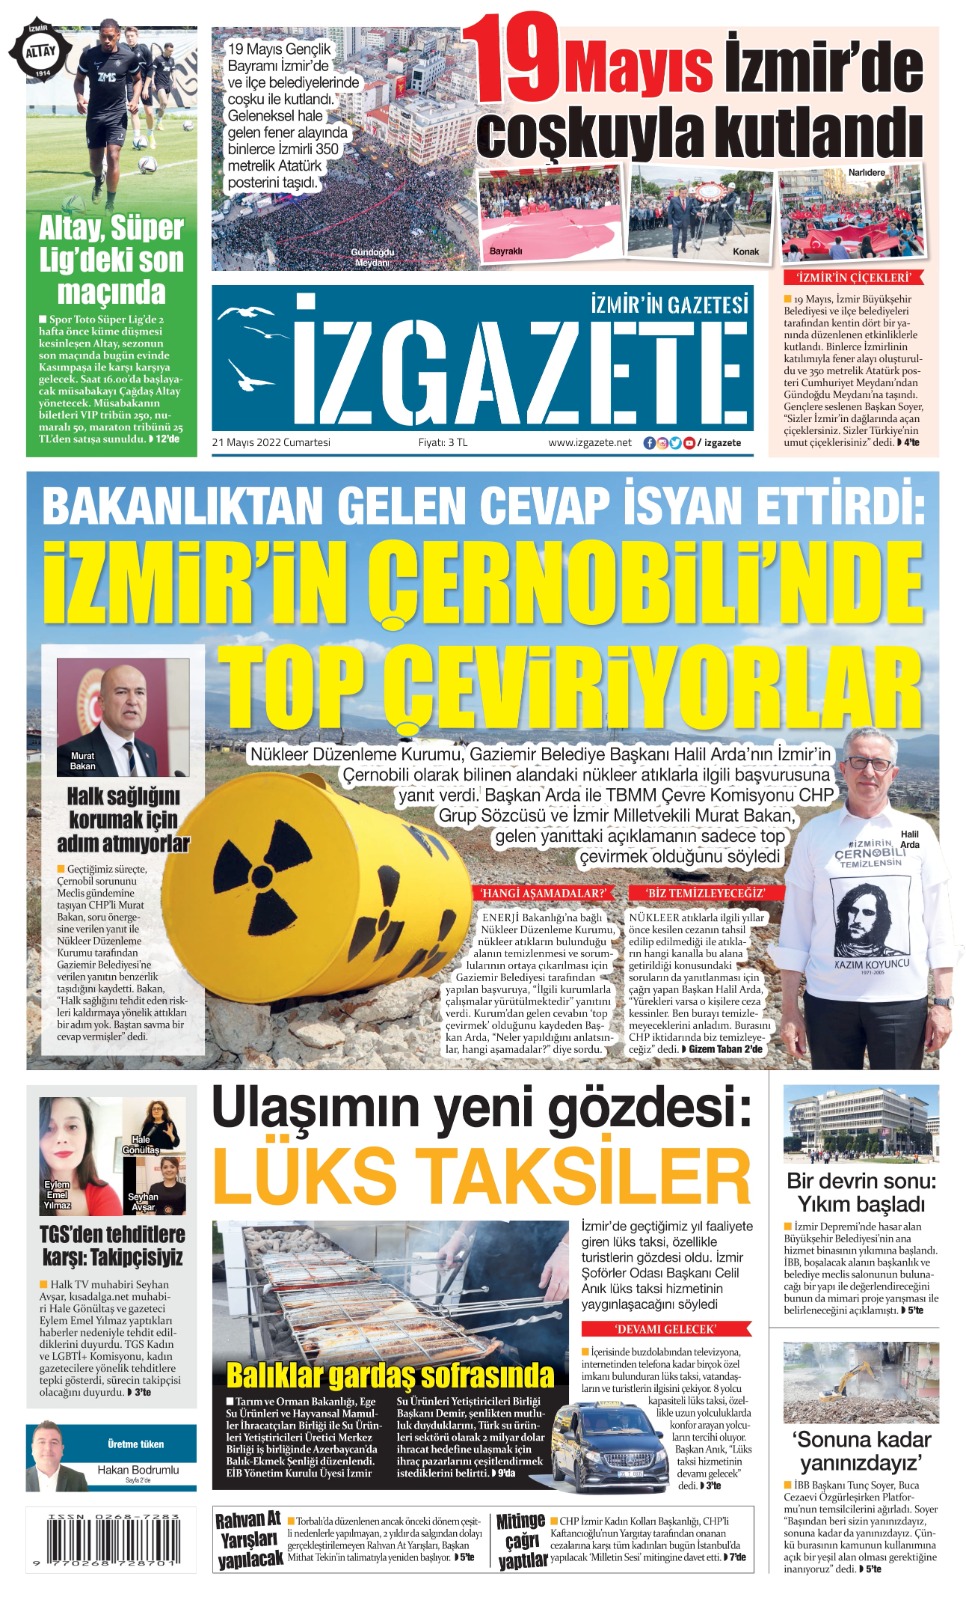 İz Gazete - İzmir'in Gazetesi - 21.05.2022 Manşeti